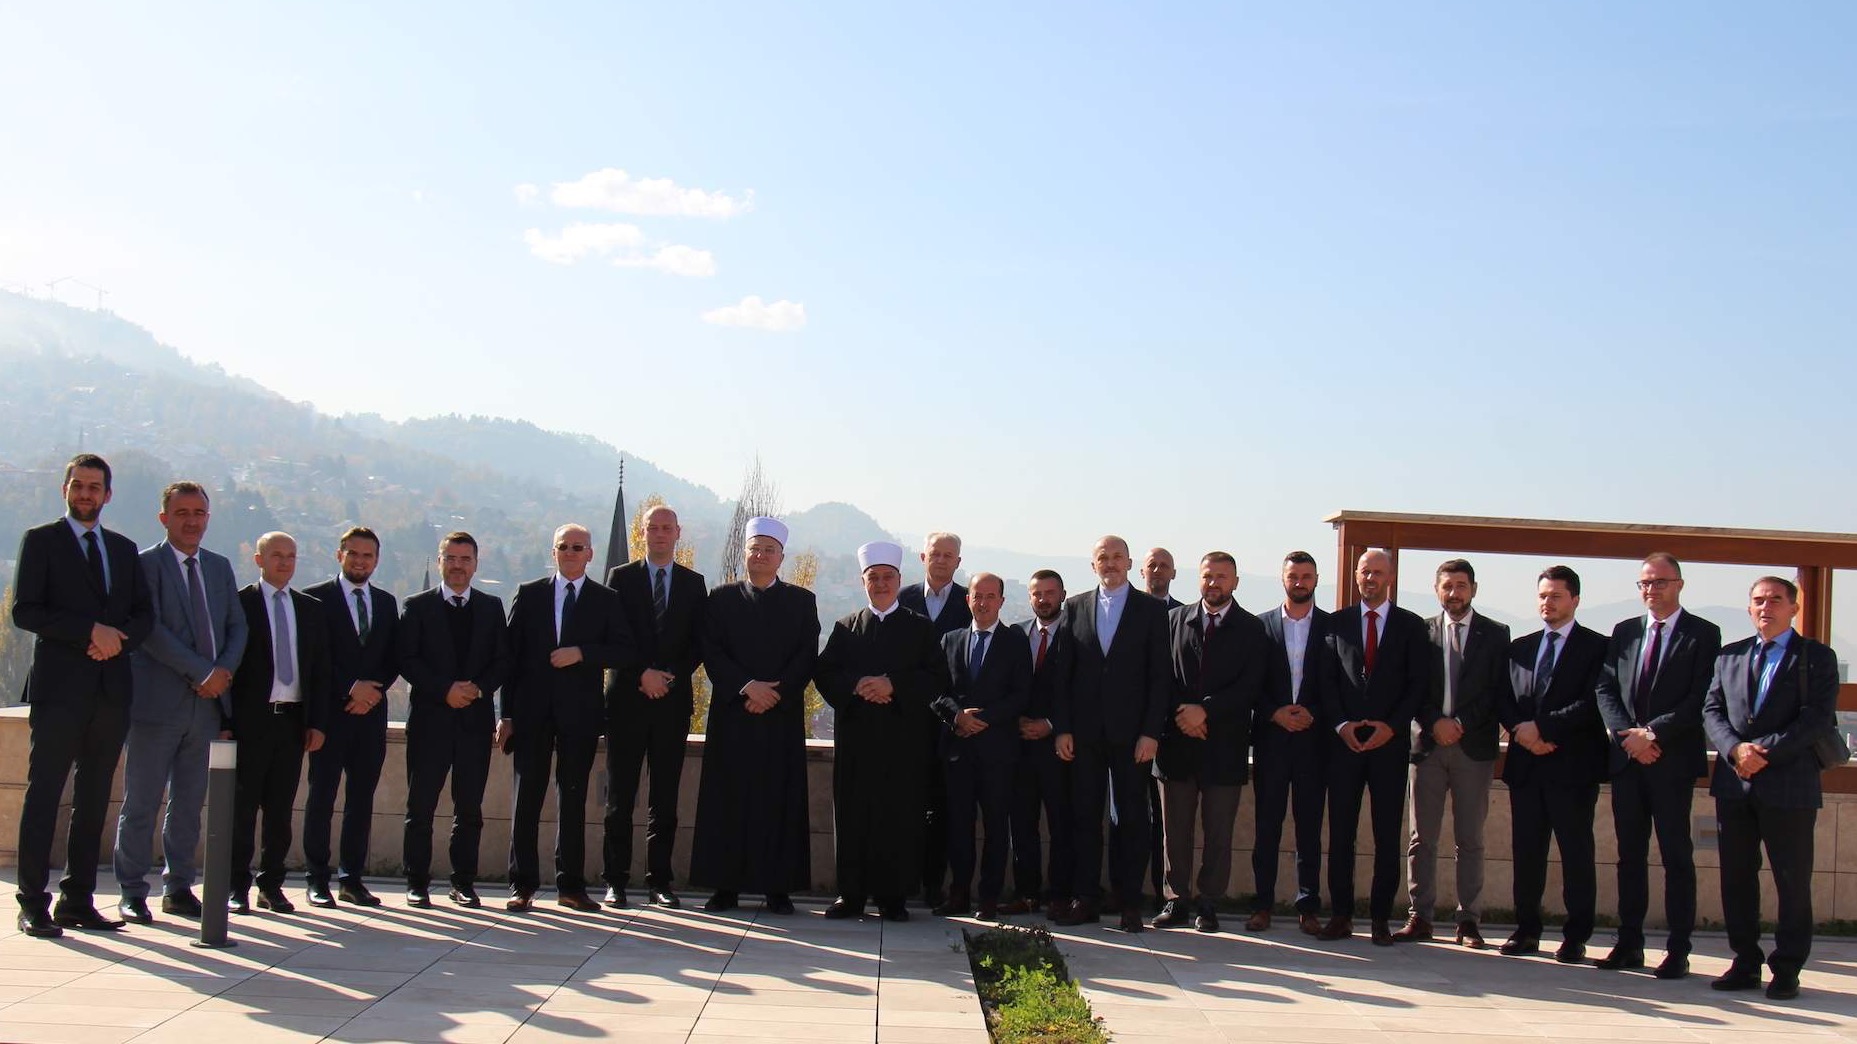 Reisul-ulemu posjetila delegacija Mešihata Islamske zajednice u Hrvatskoj (VIDEO)